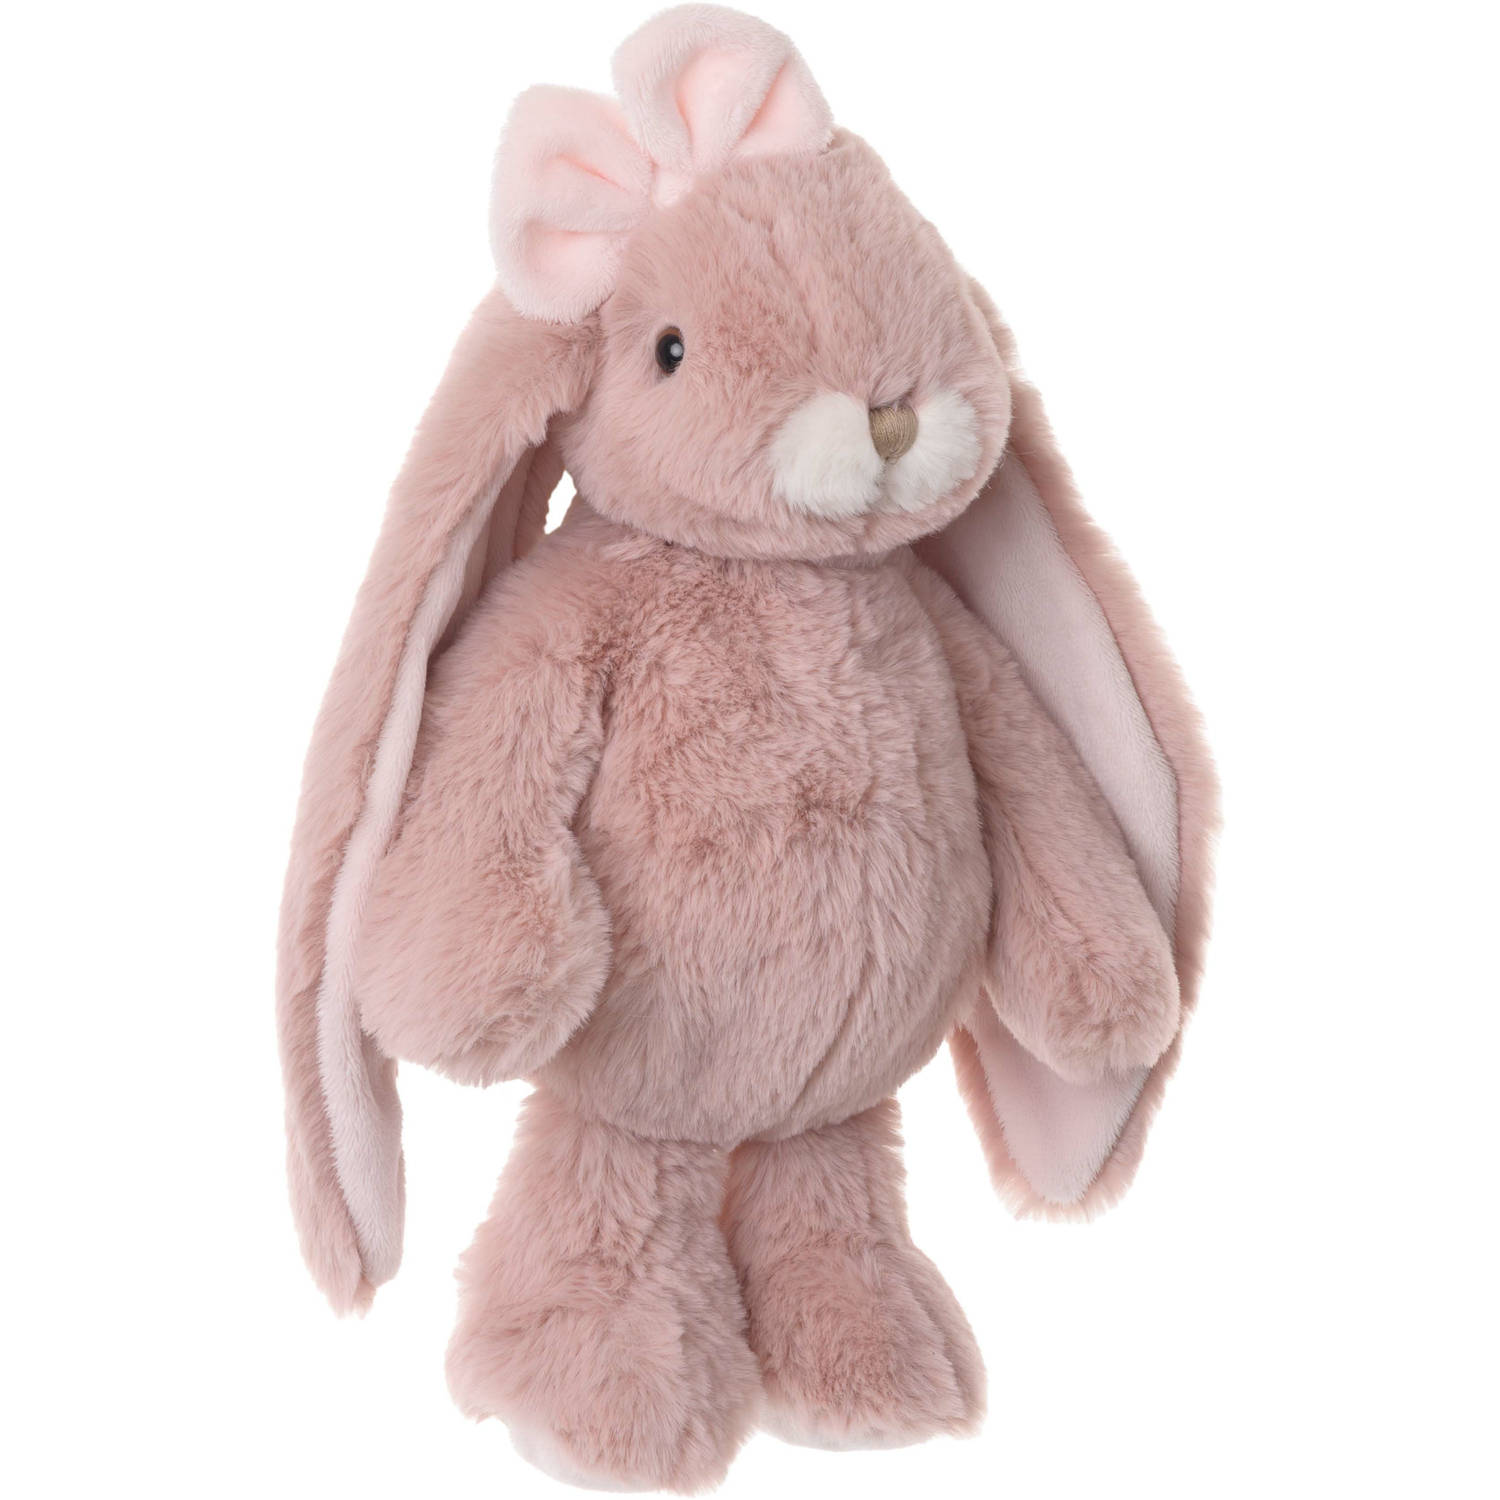 Bukowski pluche konijn knuffeldier - oud roze - staand - 30 cm - Luxe kwaliteit knuffels